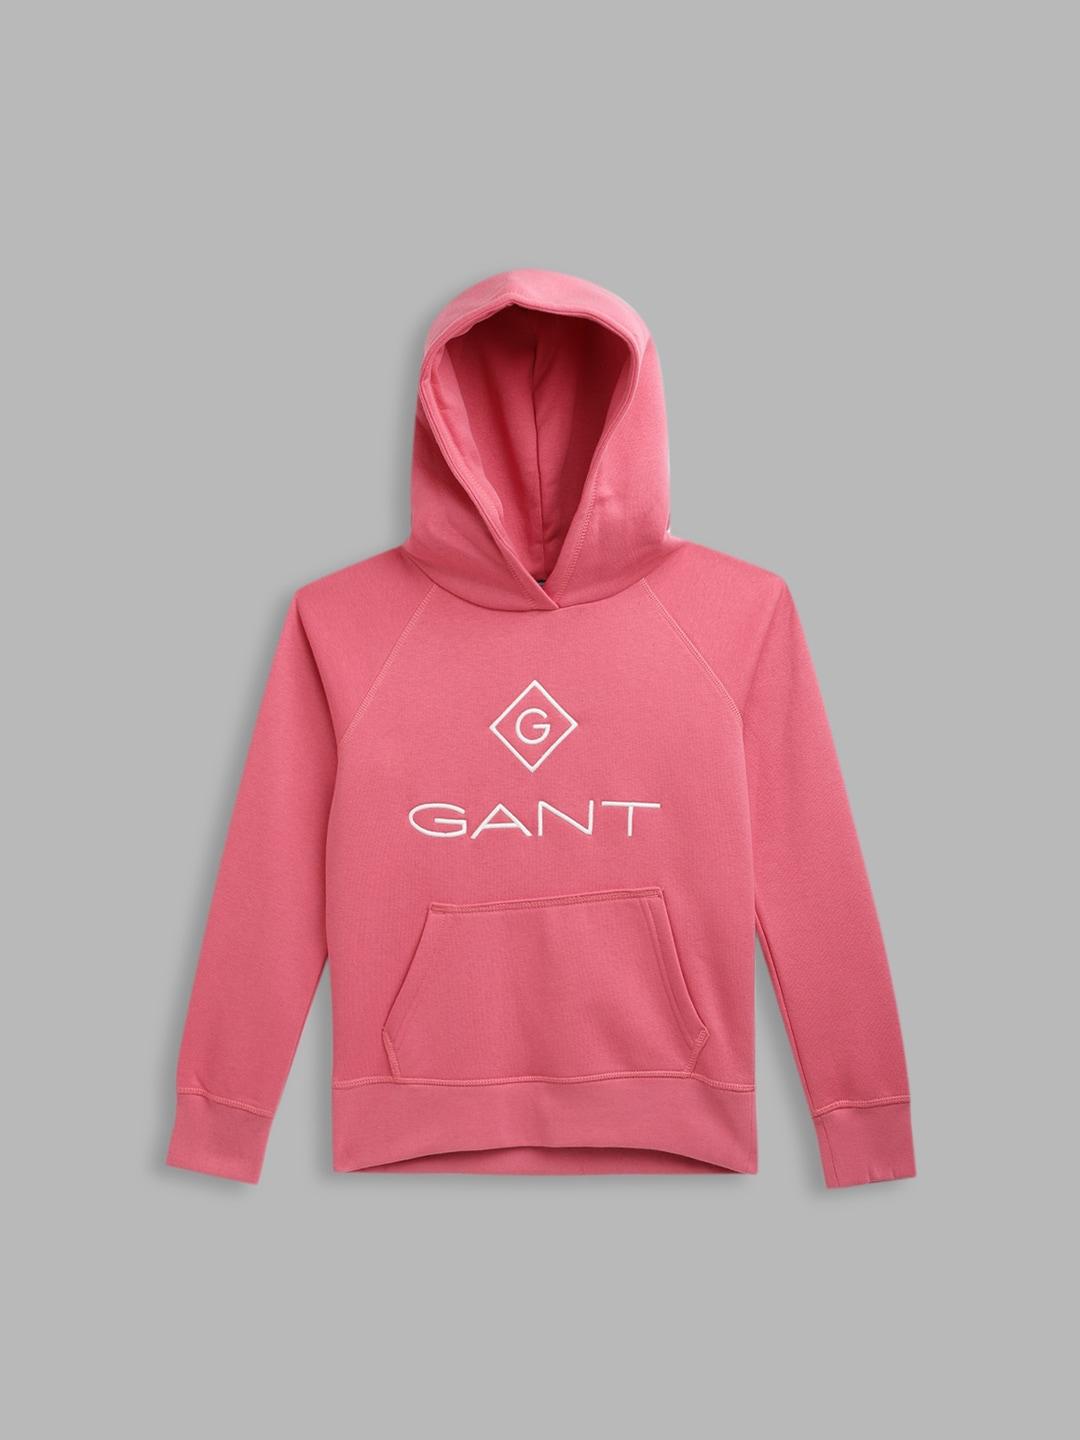 gant-boys-pink-printed-hooded-sweatshirt